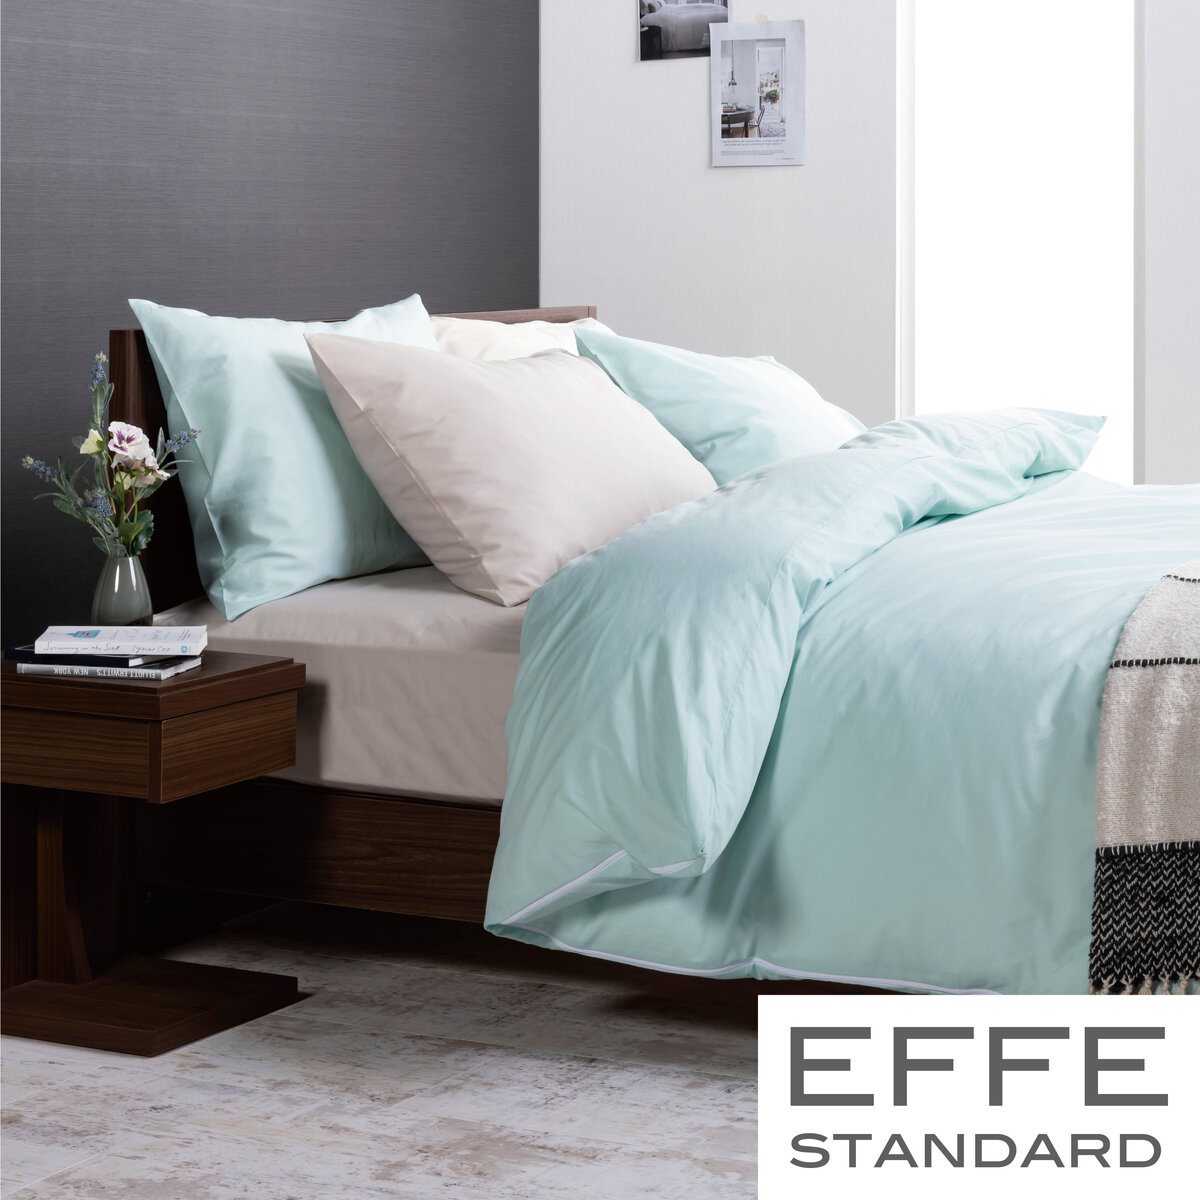 フランスベッド 寝装品 3点セット エッフェスタンダード ワイドダブル ブルー